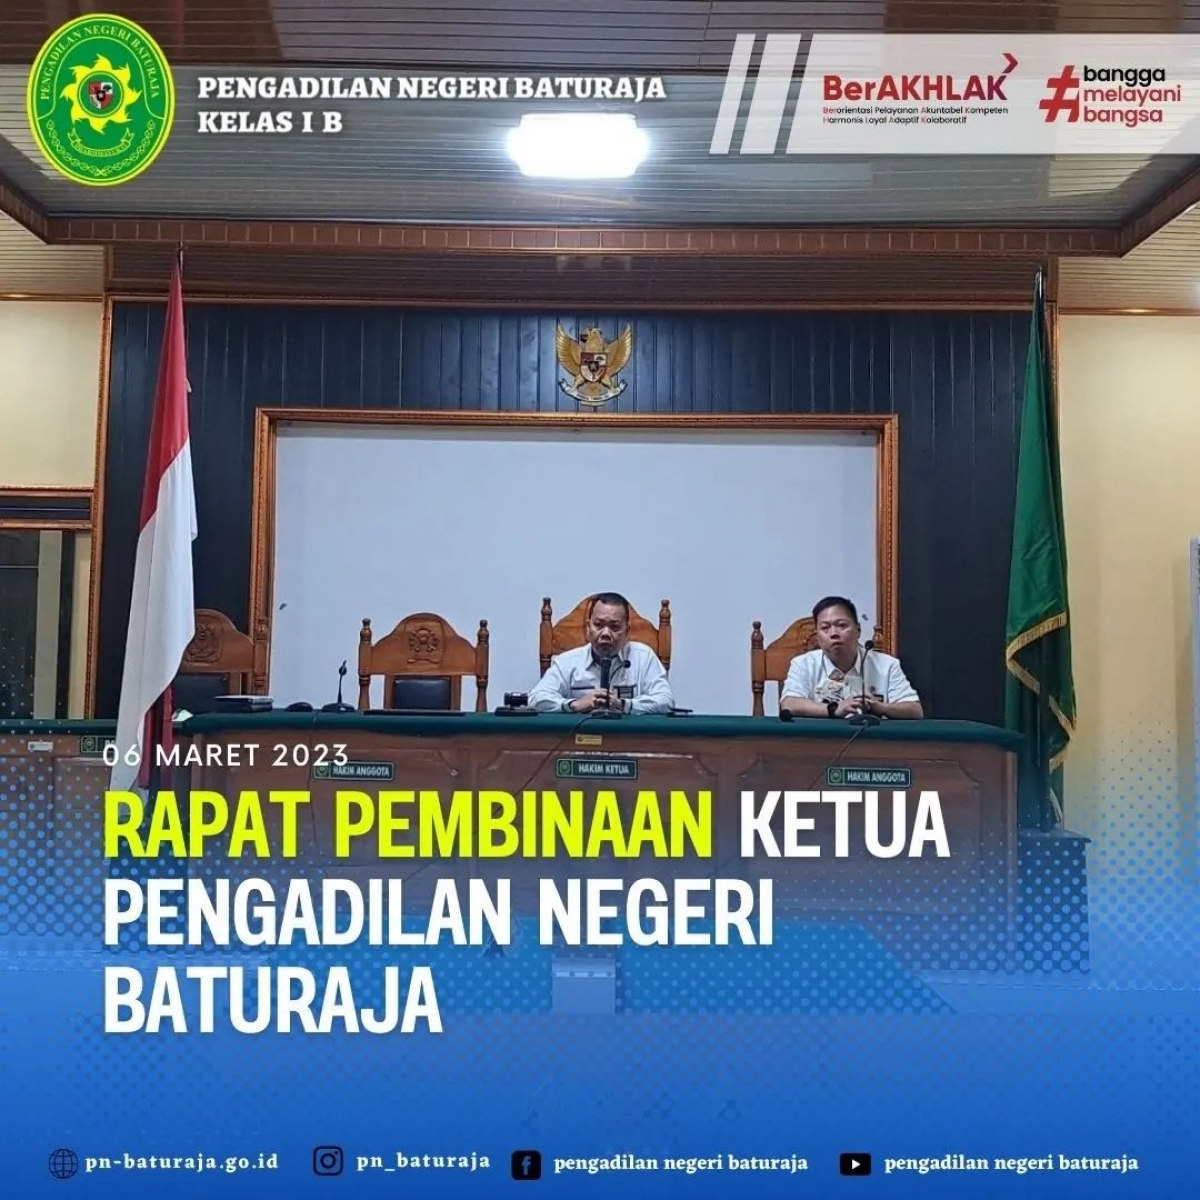 Rapat Pembinaan Ketua Pengadilan Negeri Baturaja